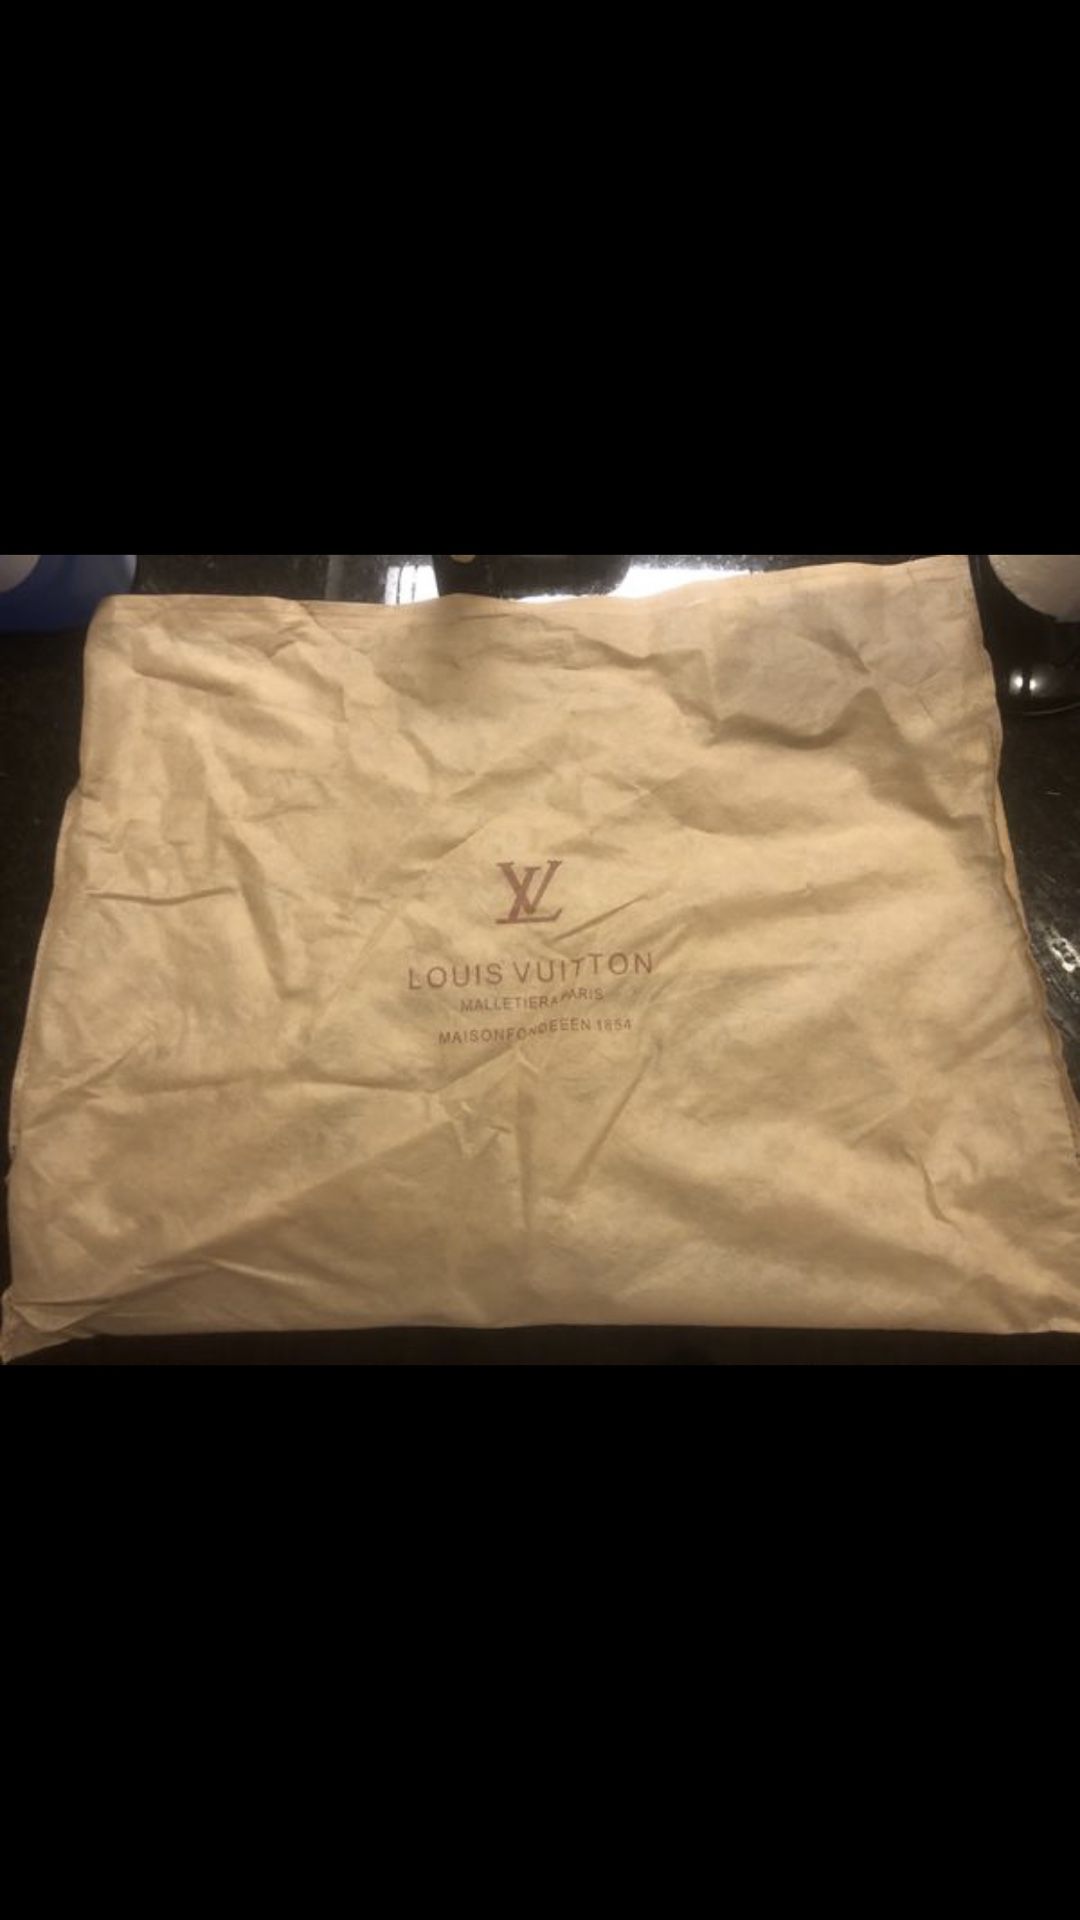 Louis Vuitton duffle bag